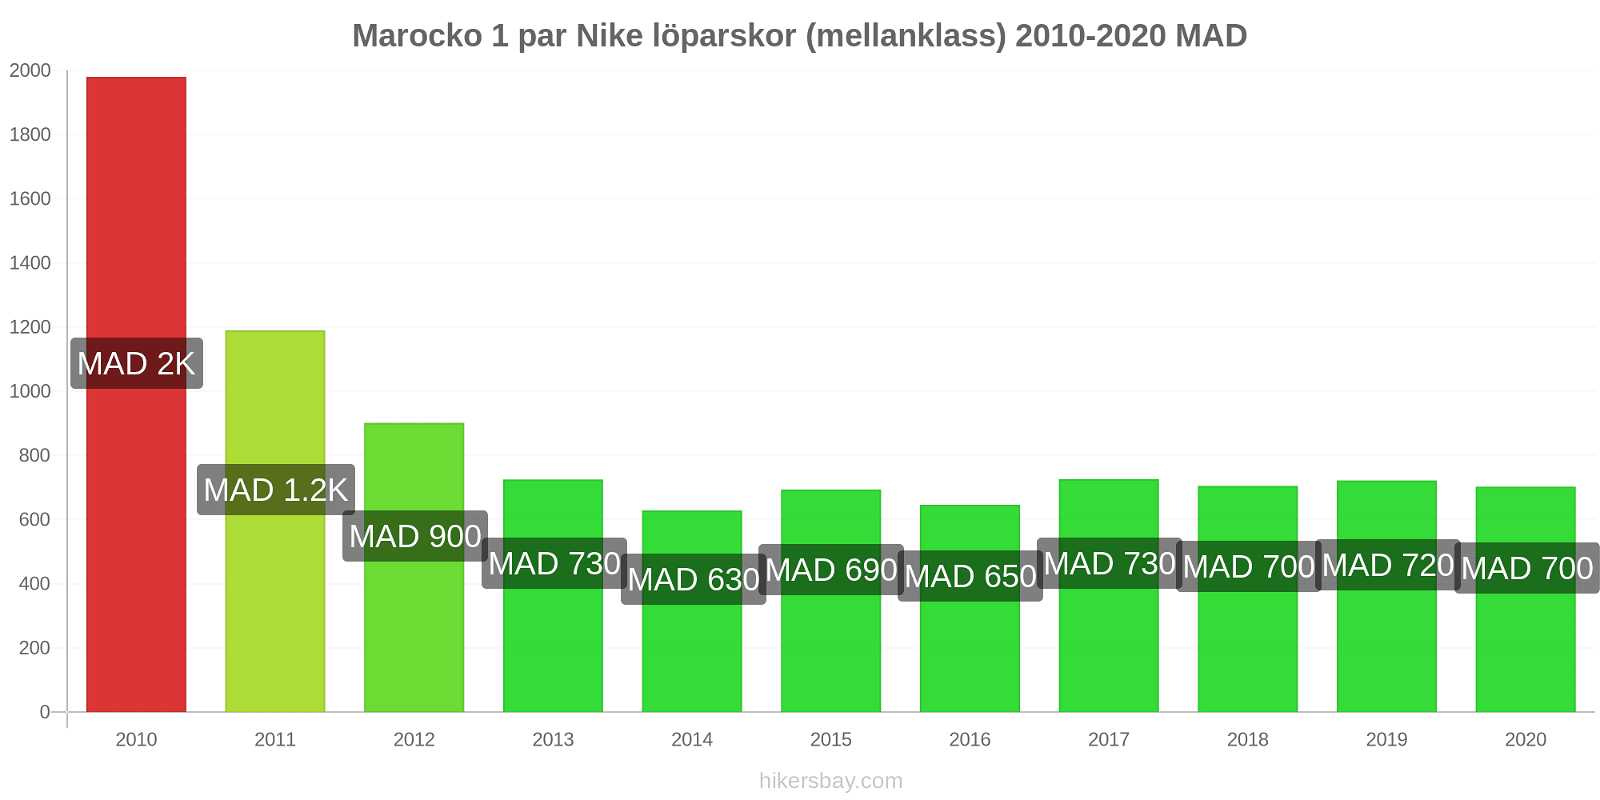 Marocko prisförändringar 1 par Nike löparskor (mellanklass) hikersbay.com